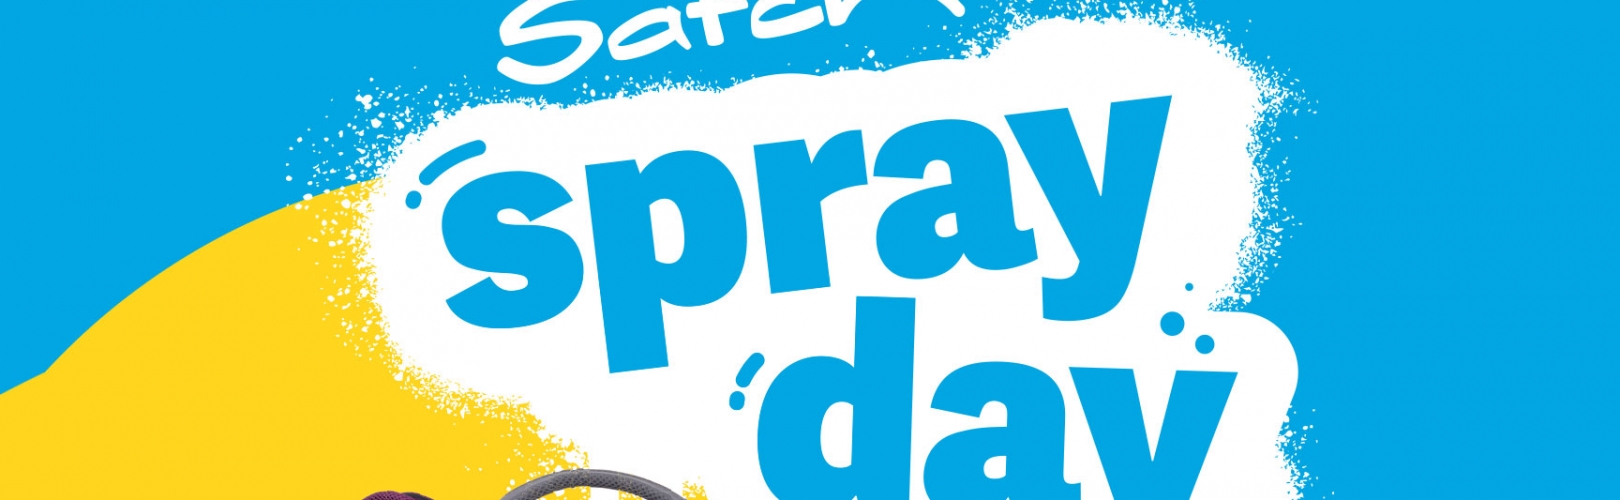 Satch Spray Day bei Kiesow / Freitag, 26.06.2020 / 12-18 Uhr